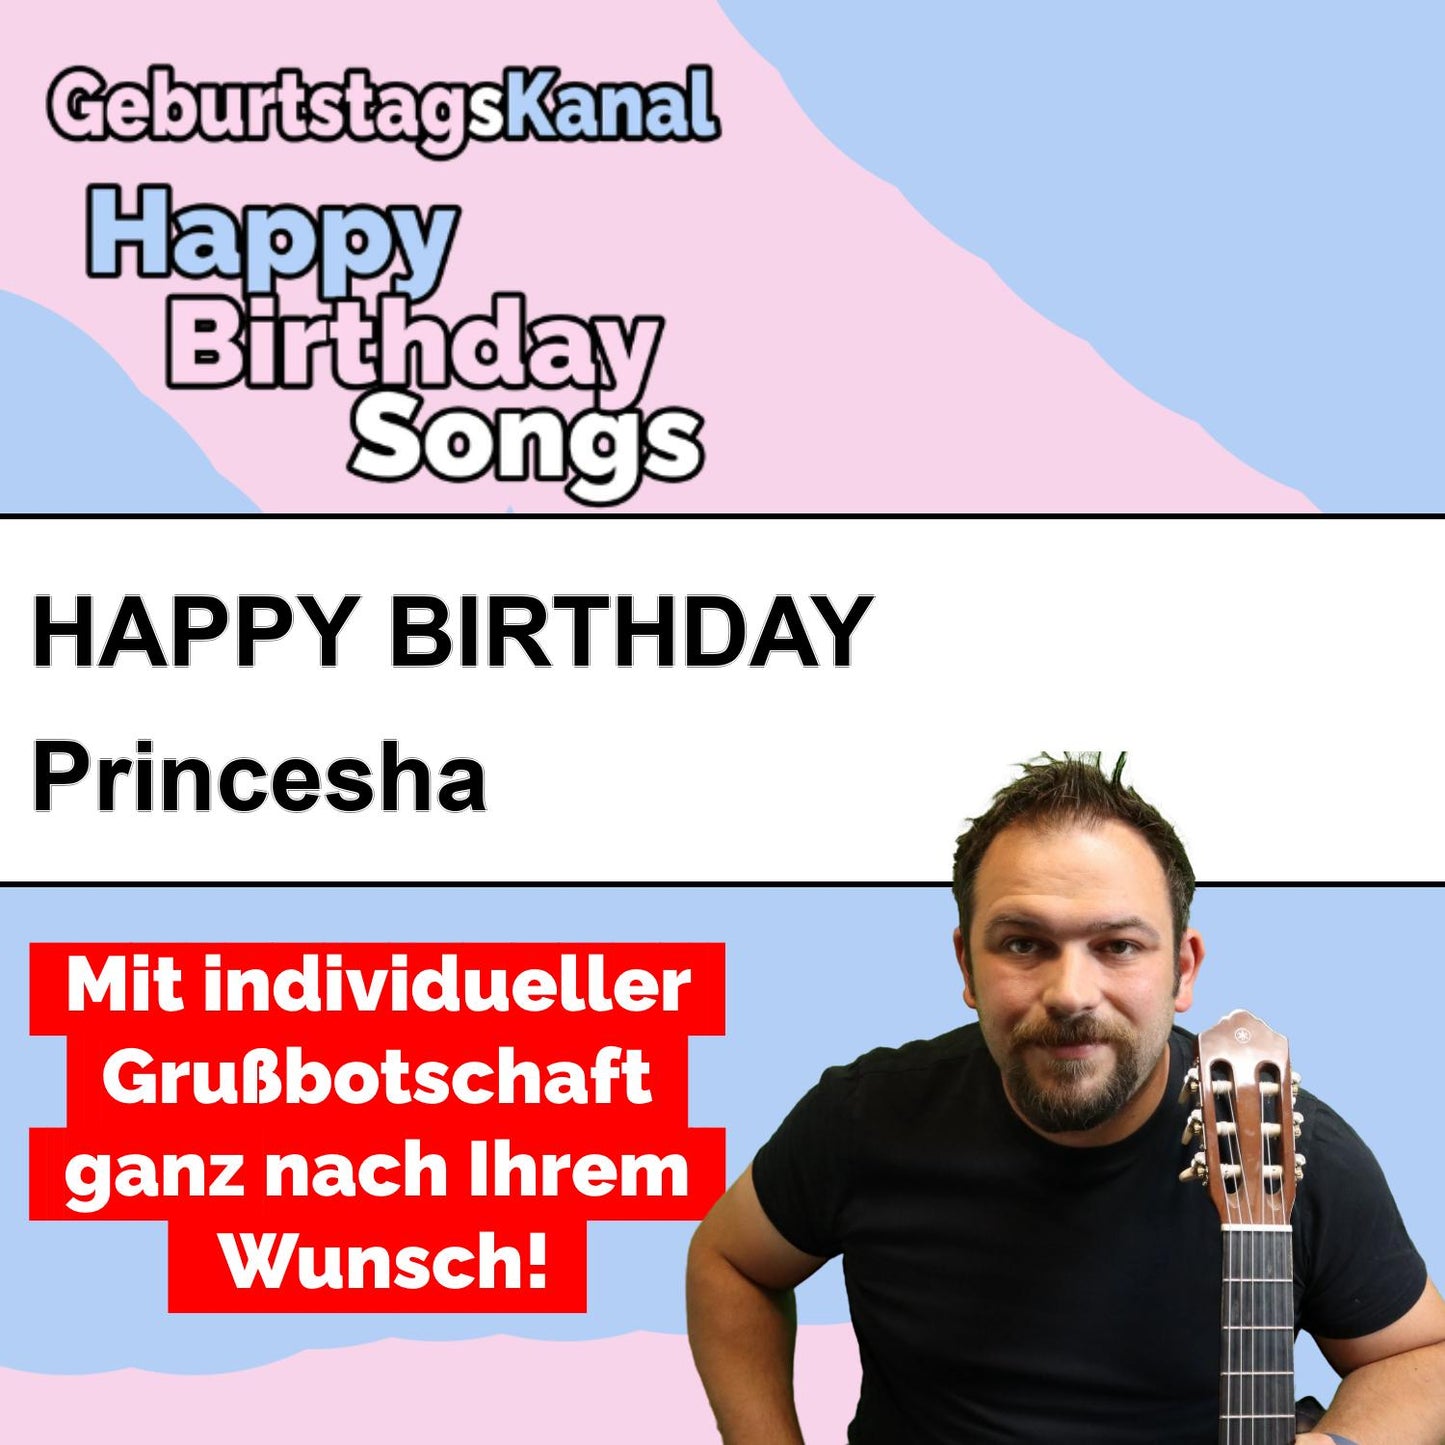 Produktbild Happy Birthday to you Princesha mit Wunschgrußbotschaft